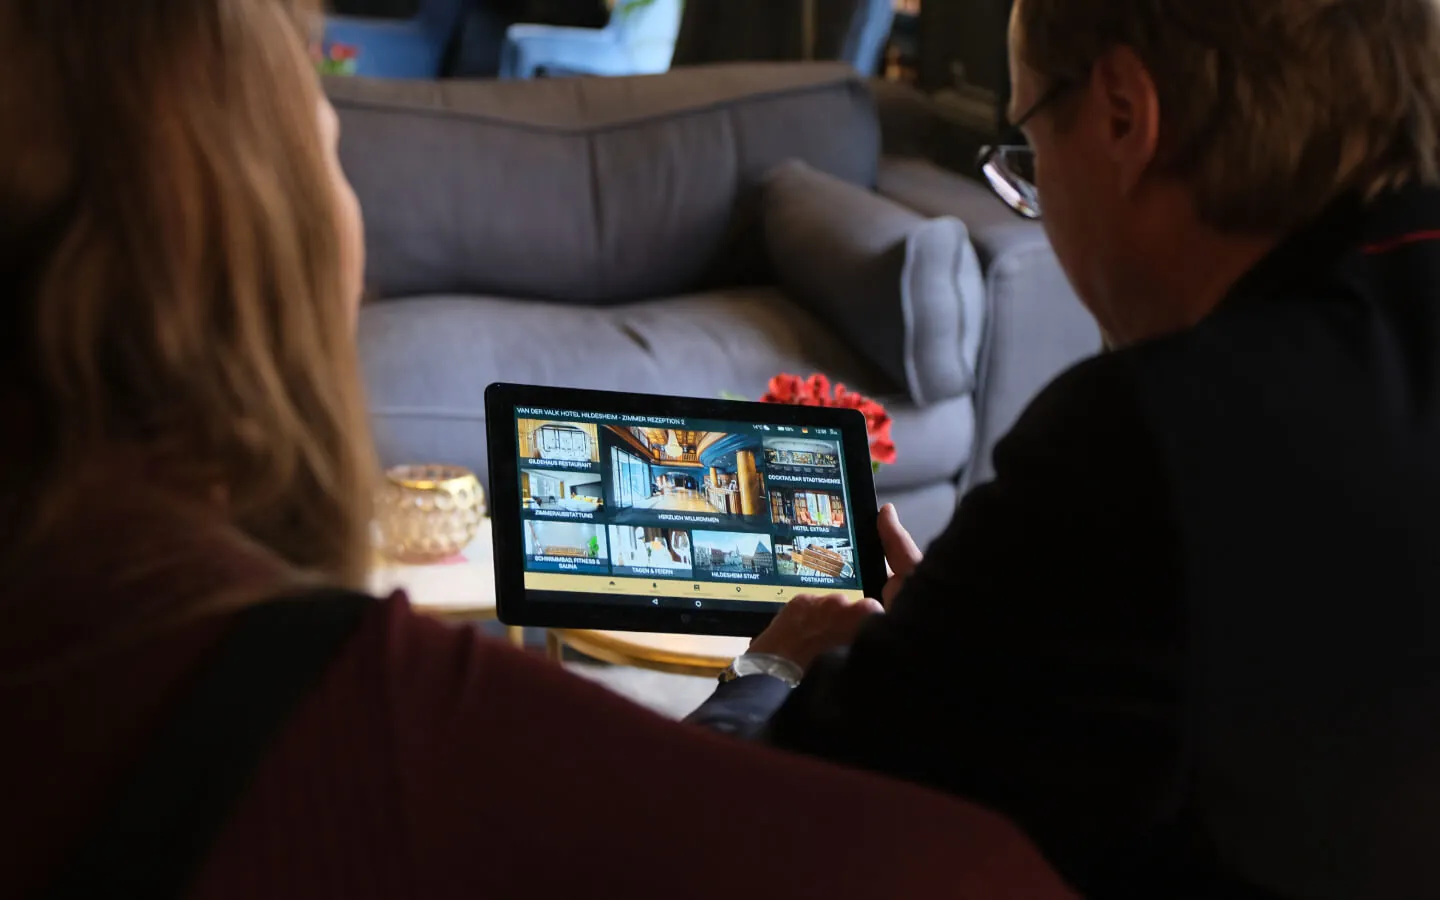 zwei gäste schauen sich die digitale Gästemappe auf dem Tablet vom Hotel van der valk an